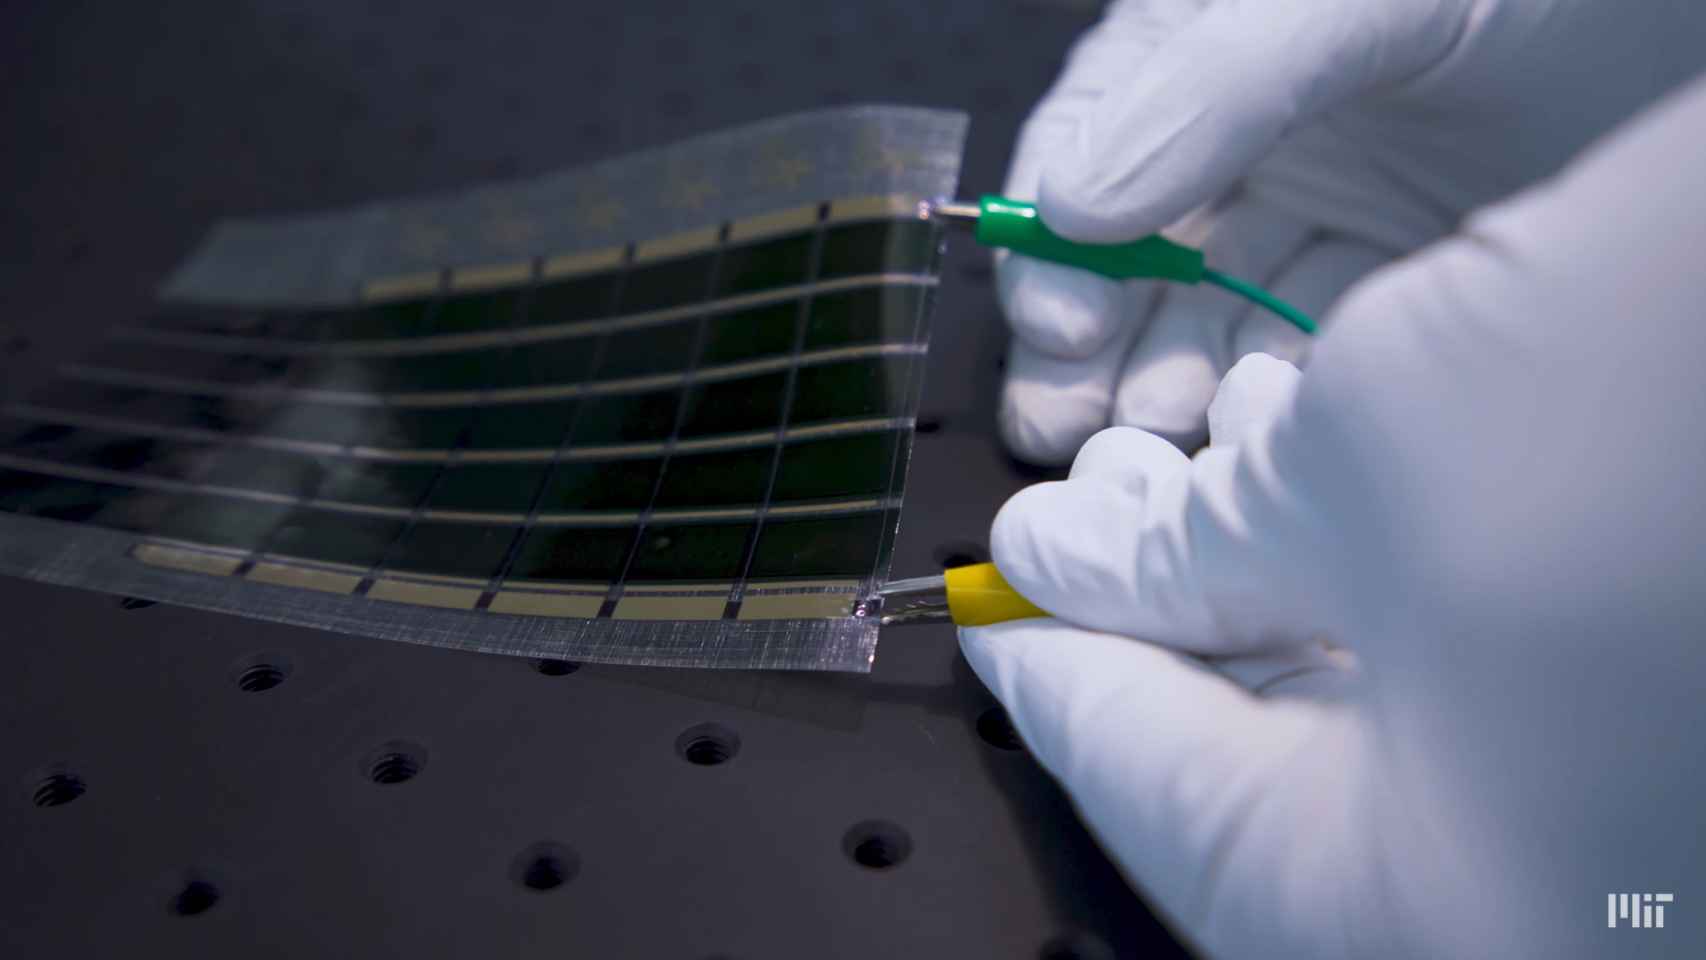 Célula solar flexible del MIT